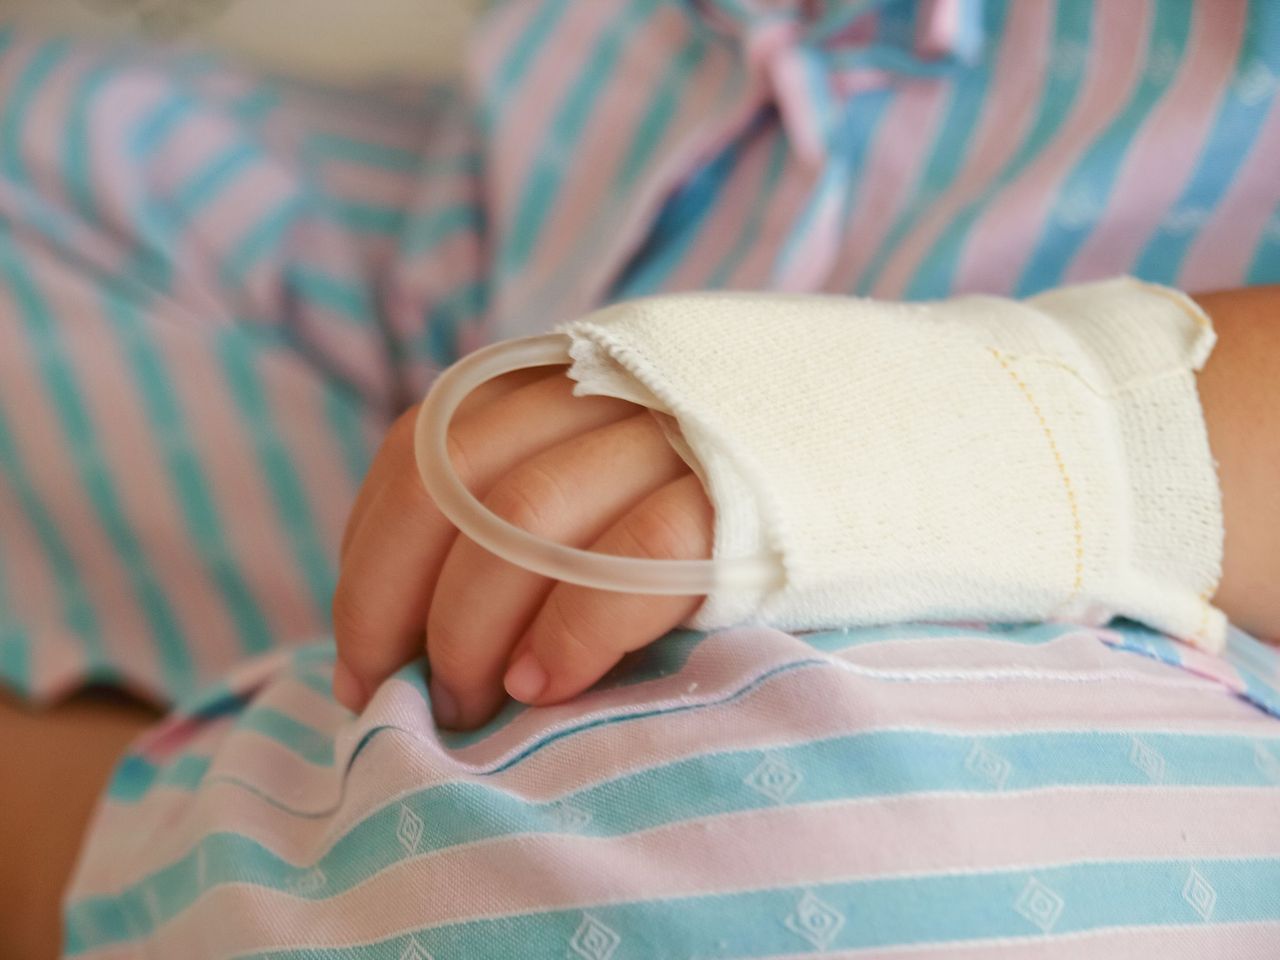 Une insertion de dextrose sur le bras d'un enfant. | Source : Shutterstock